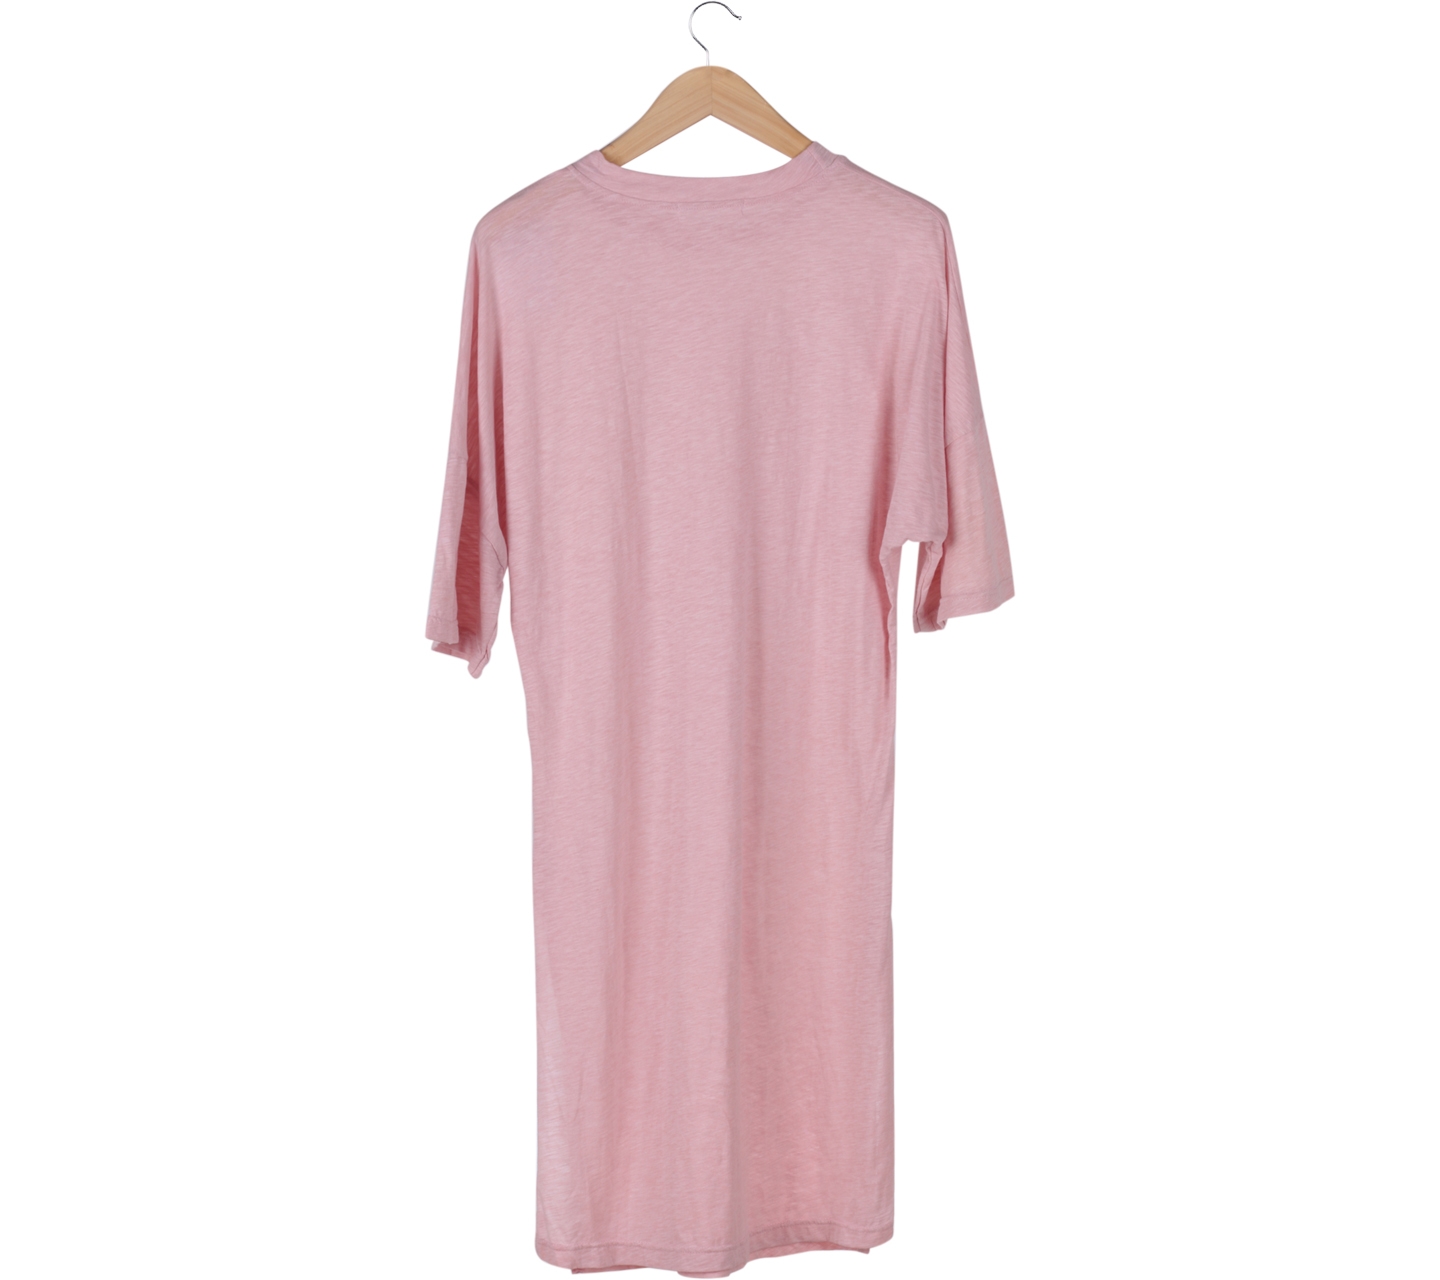 Miss A Pink Slit T-Shirt